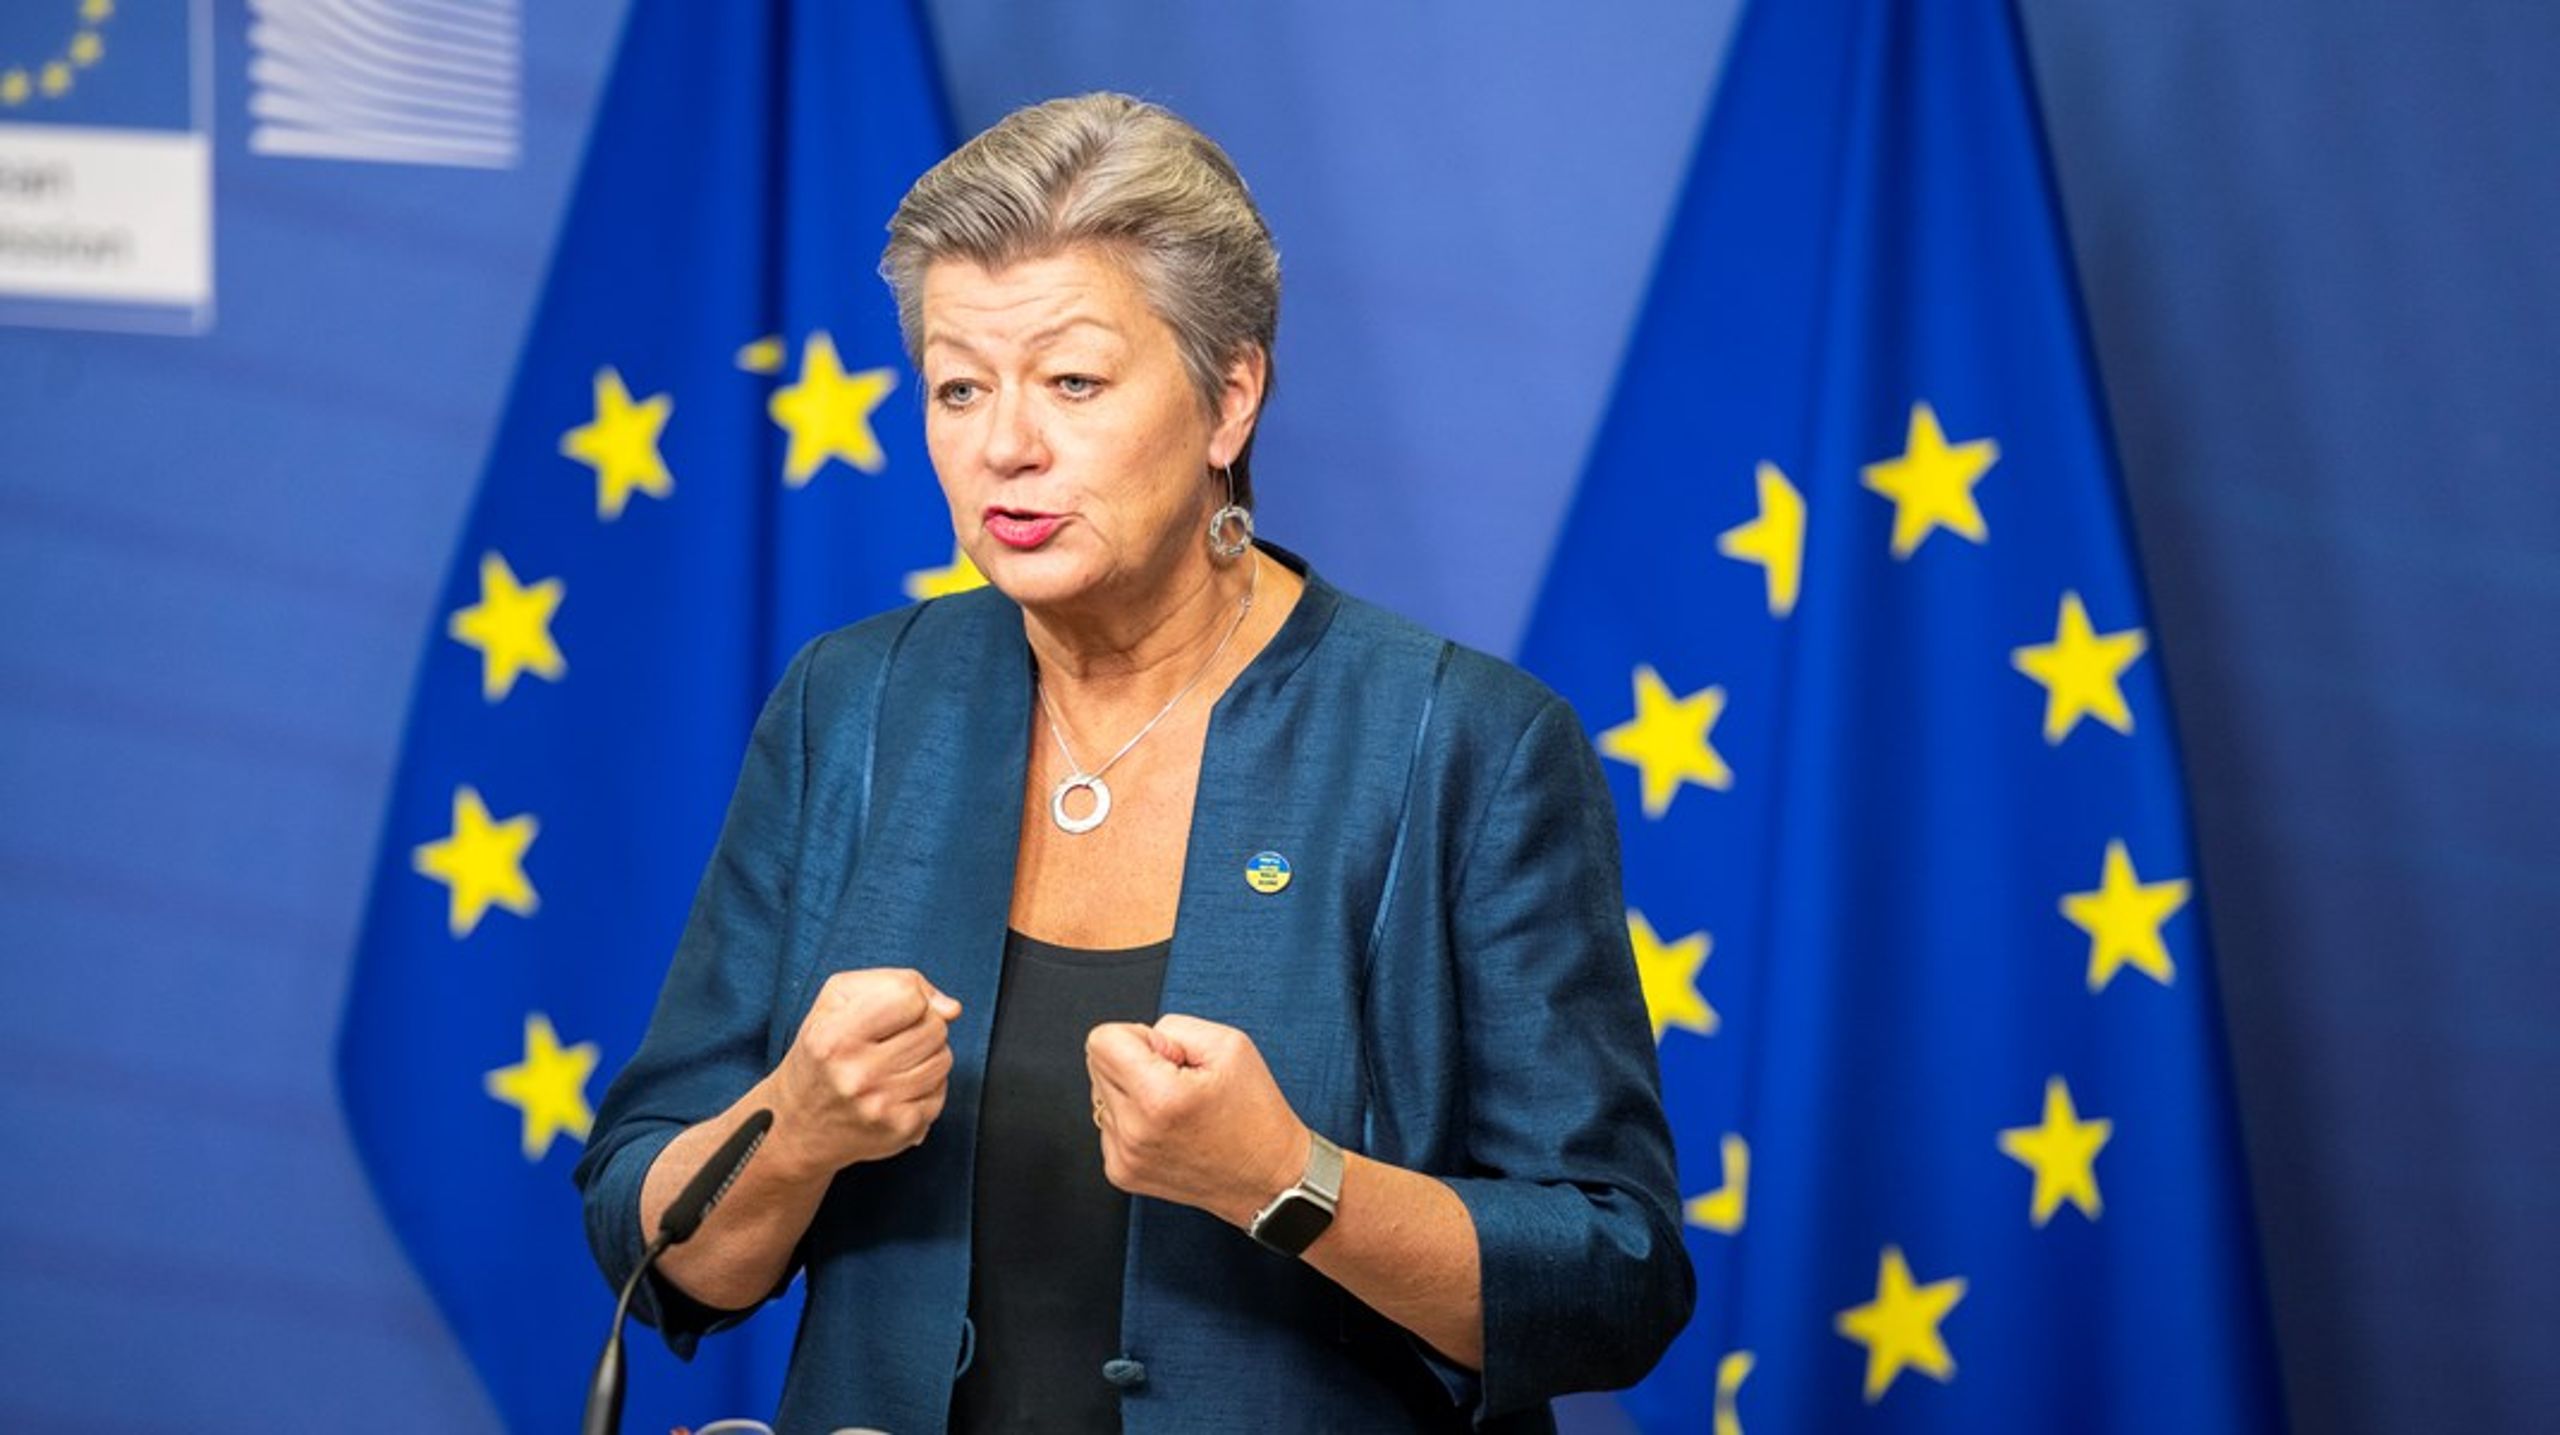 EU:s migrationskommissionär Ylva Johansson presenterade på tisdagen en ny EU-strategi för effektivare återvändande av migranter.&nbsp;&nbsp;